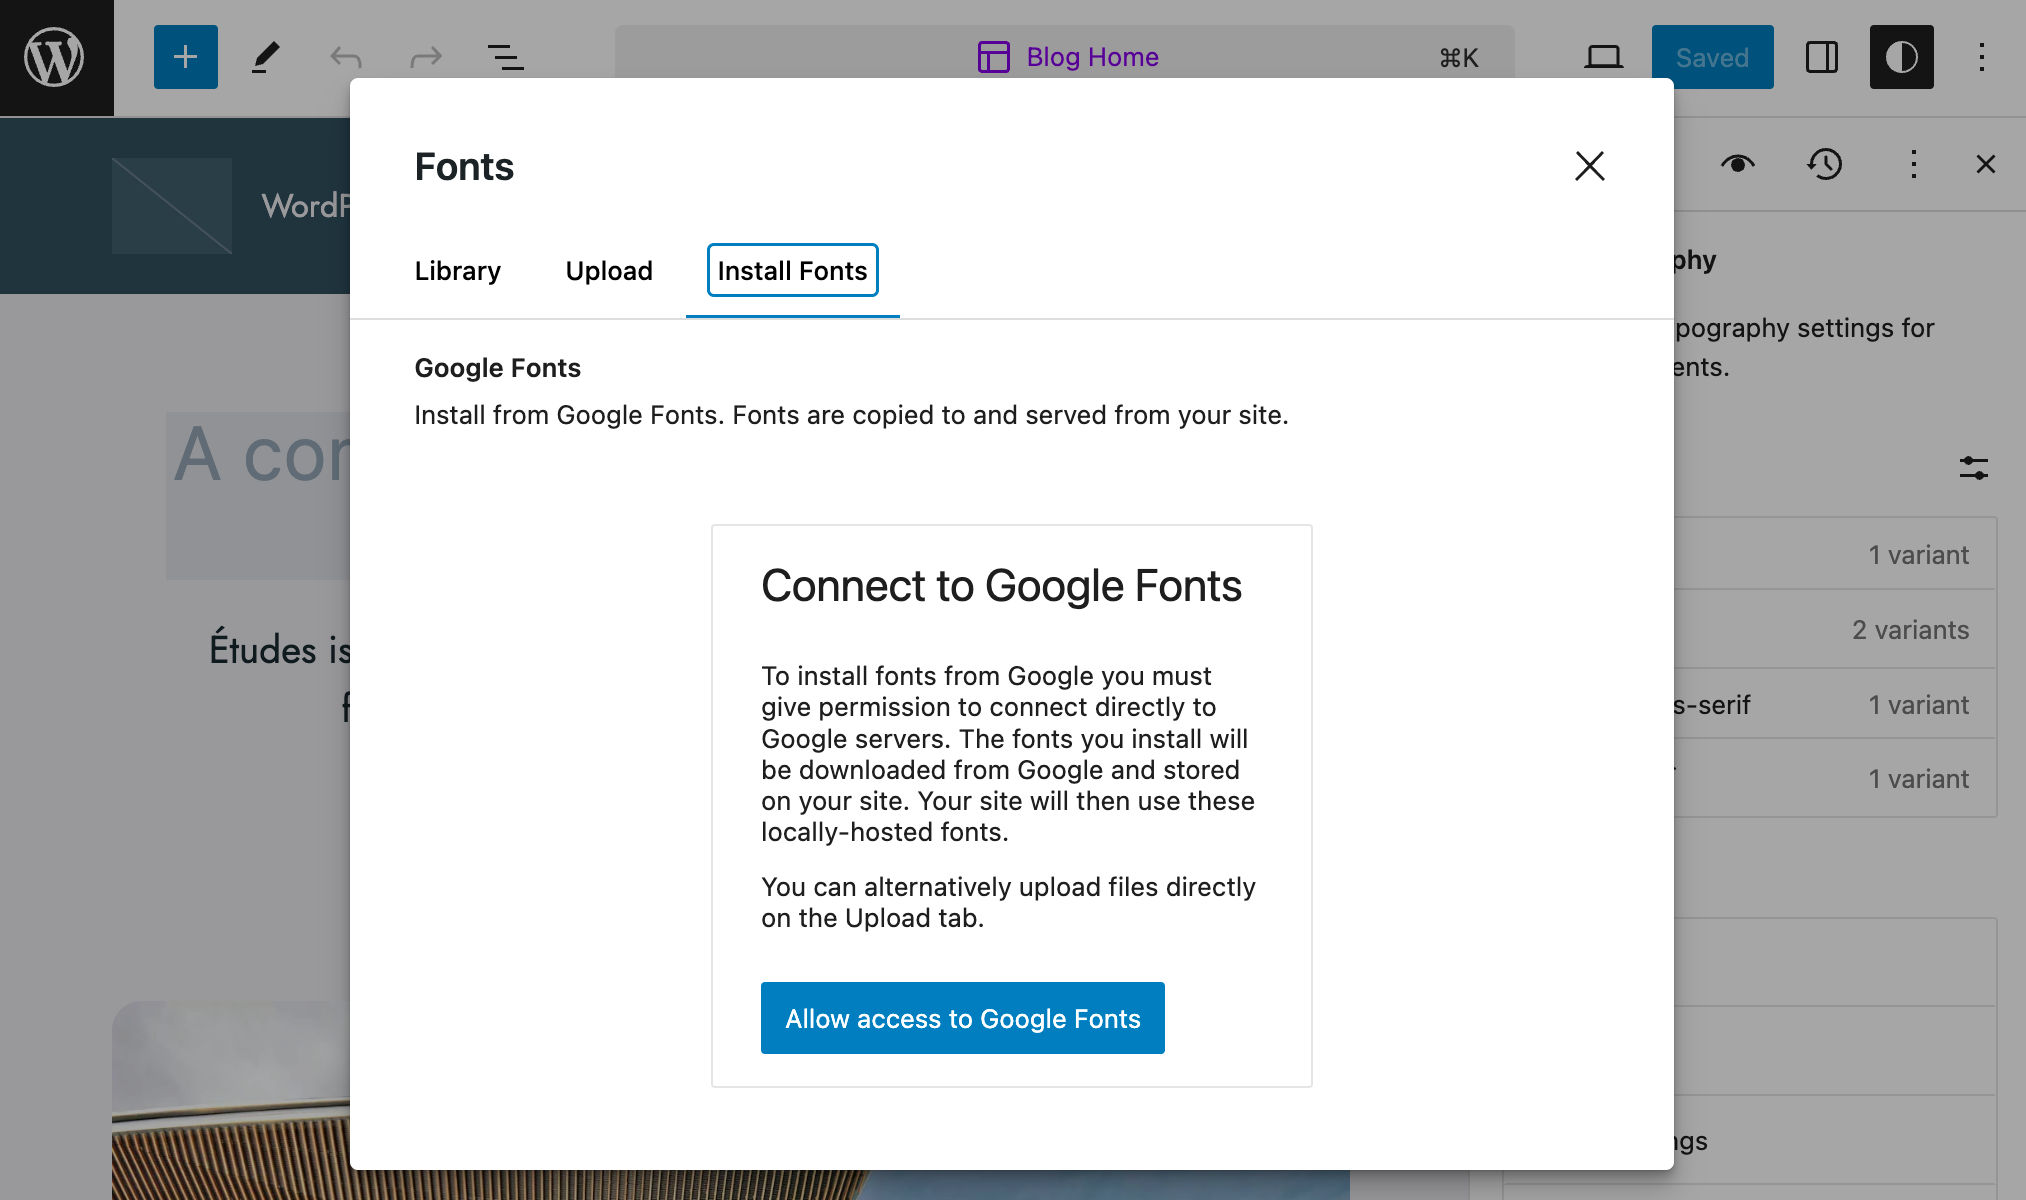 Nella scheda Install Fonts, viene chiesto di collegarsi a Google Fonts